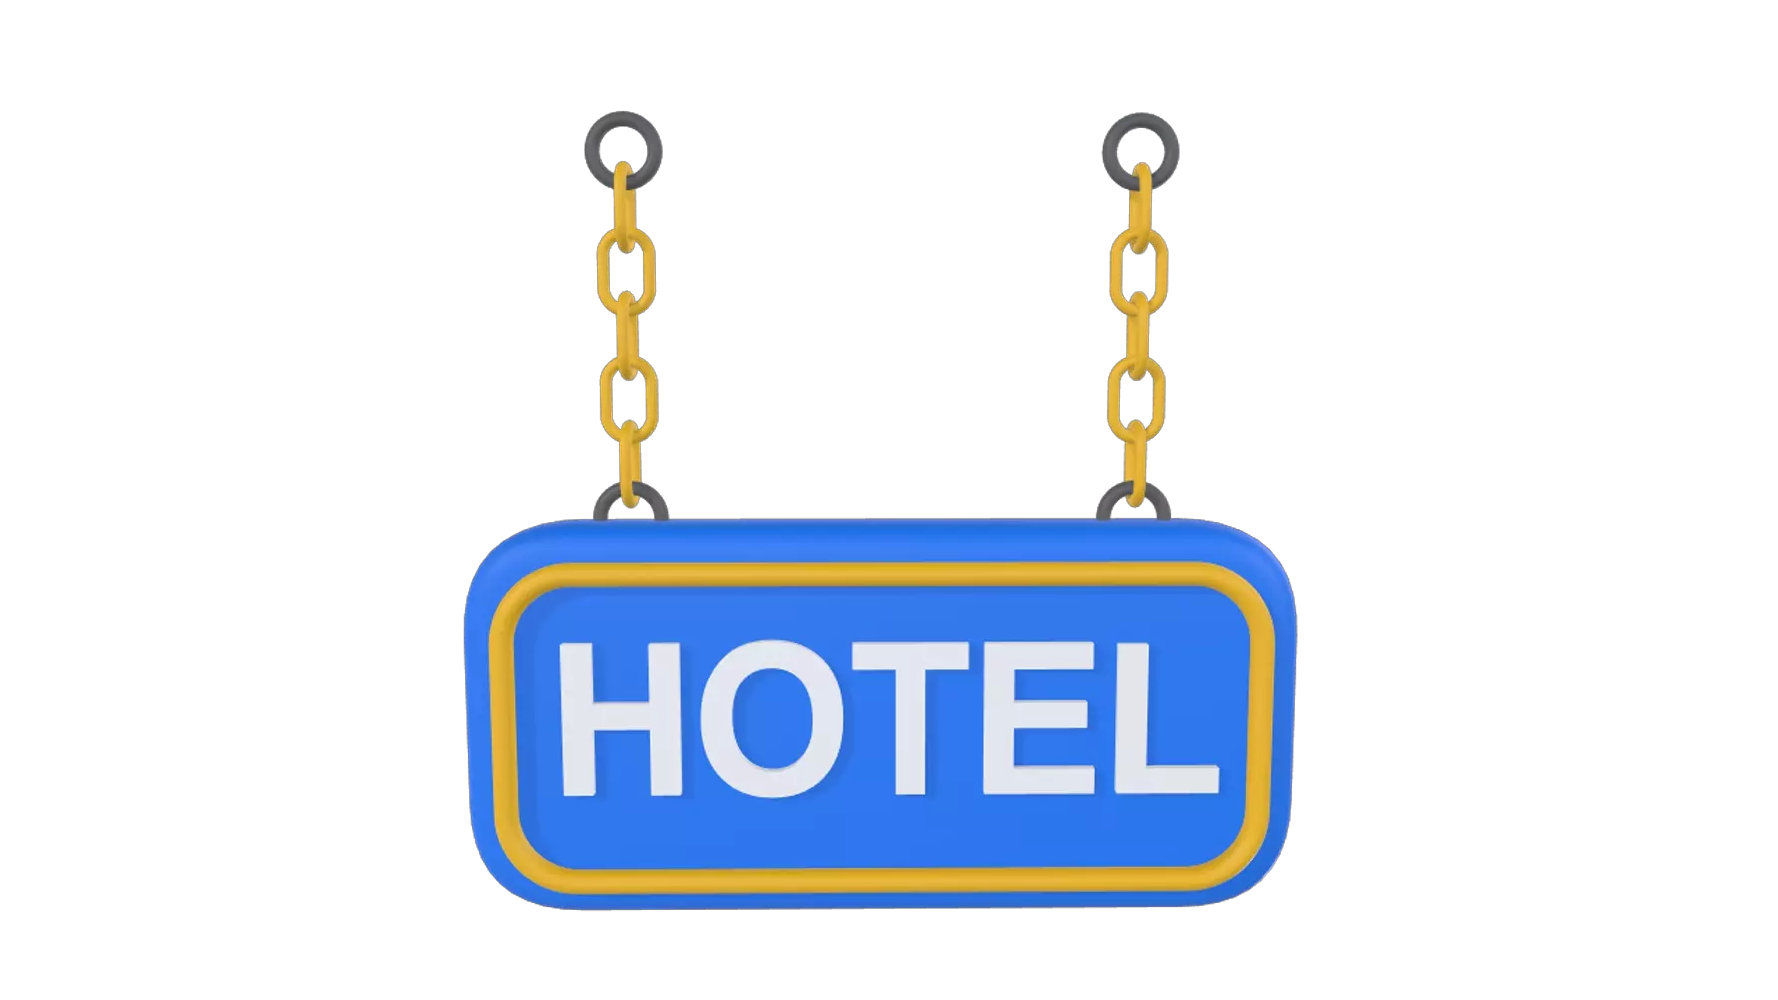 Hotel Board 3D Graphic